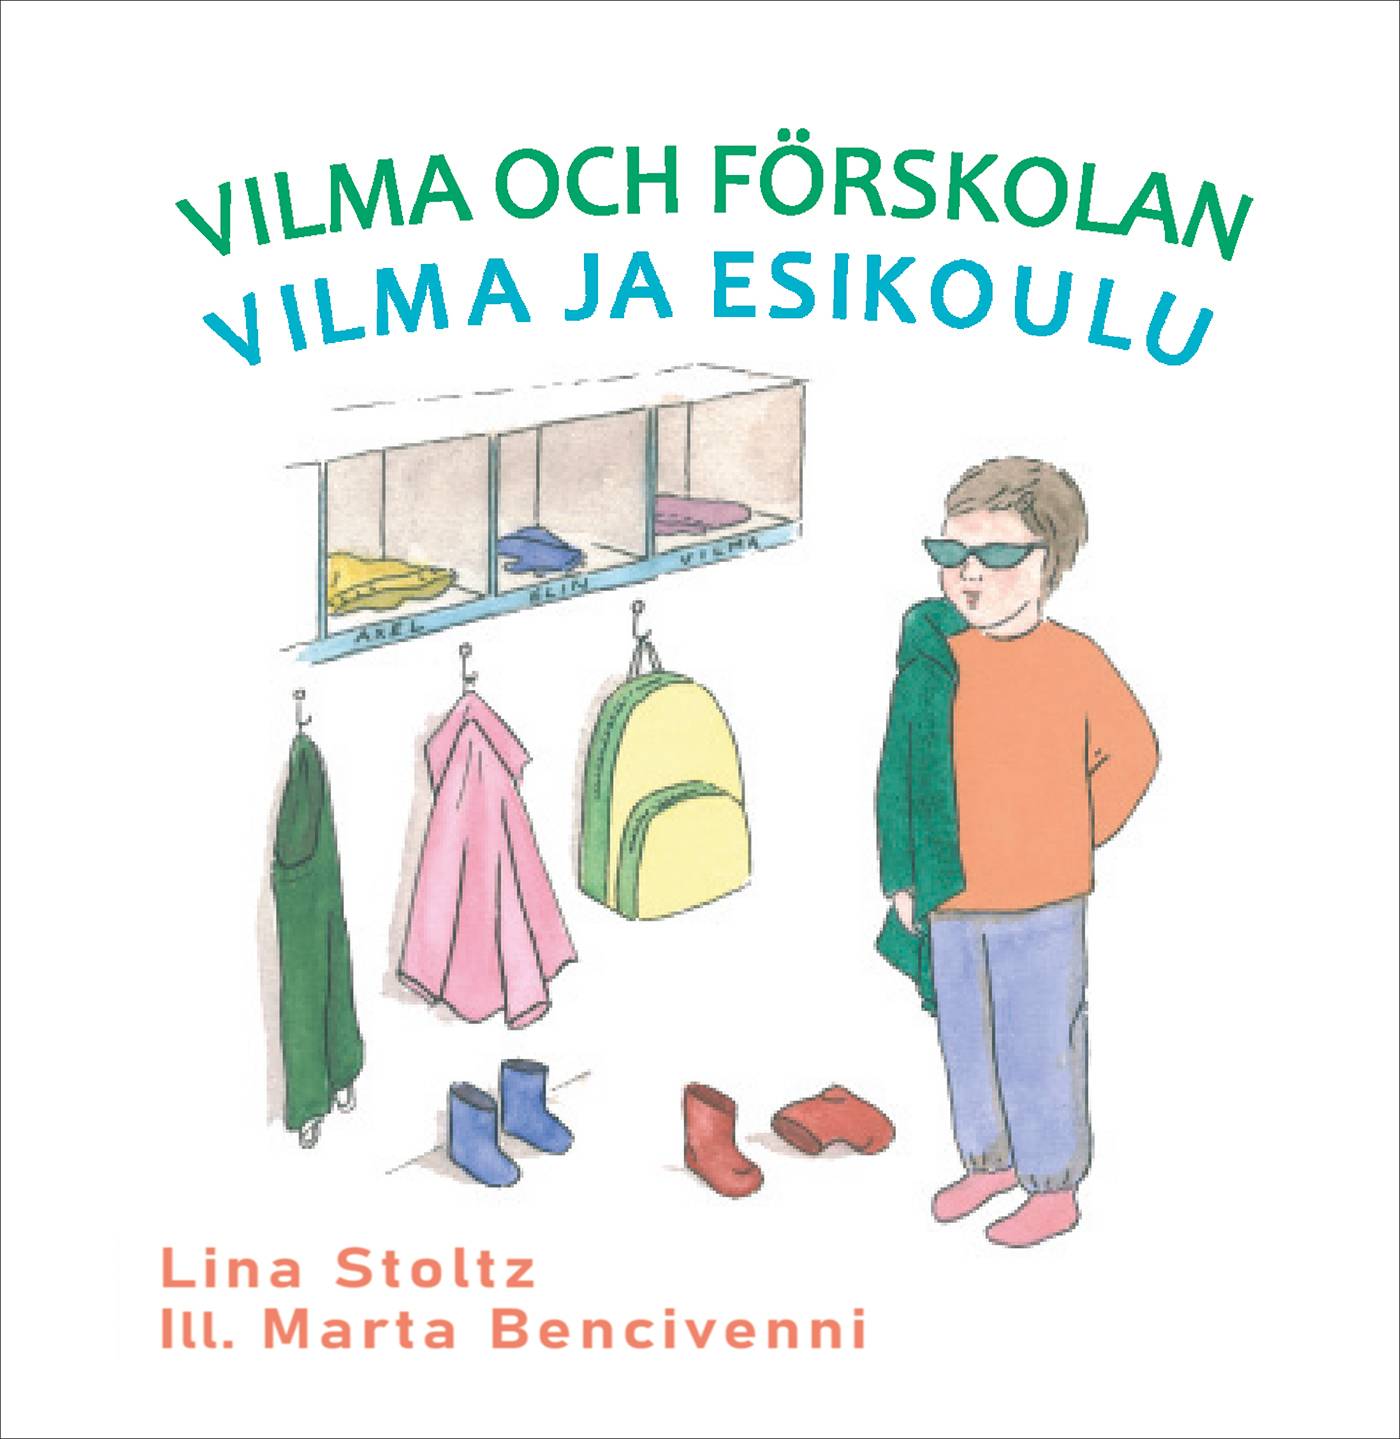 Vilma och förskolan / Vilma ja esikoulu